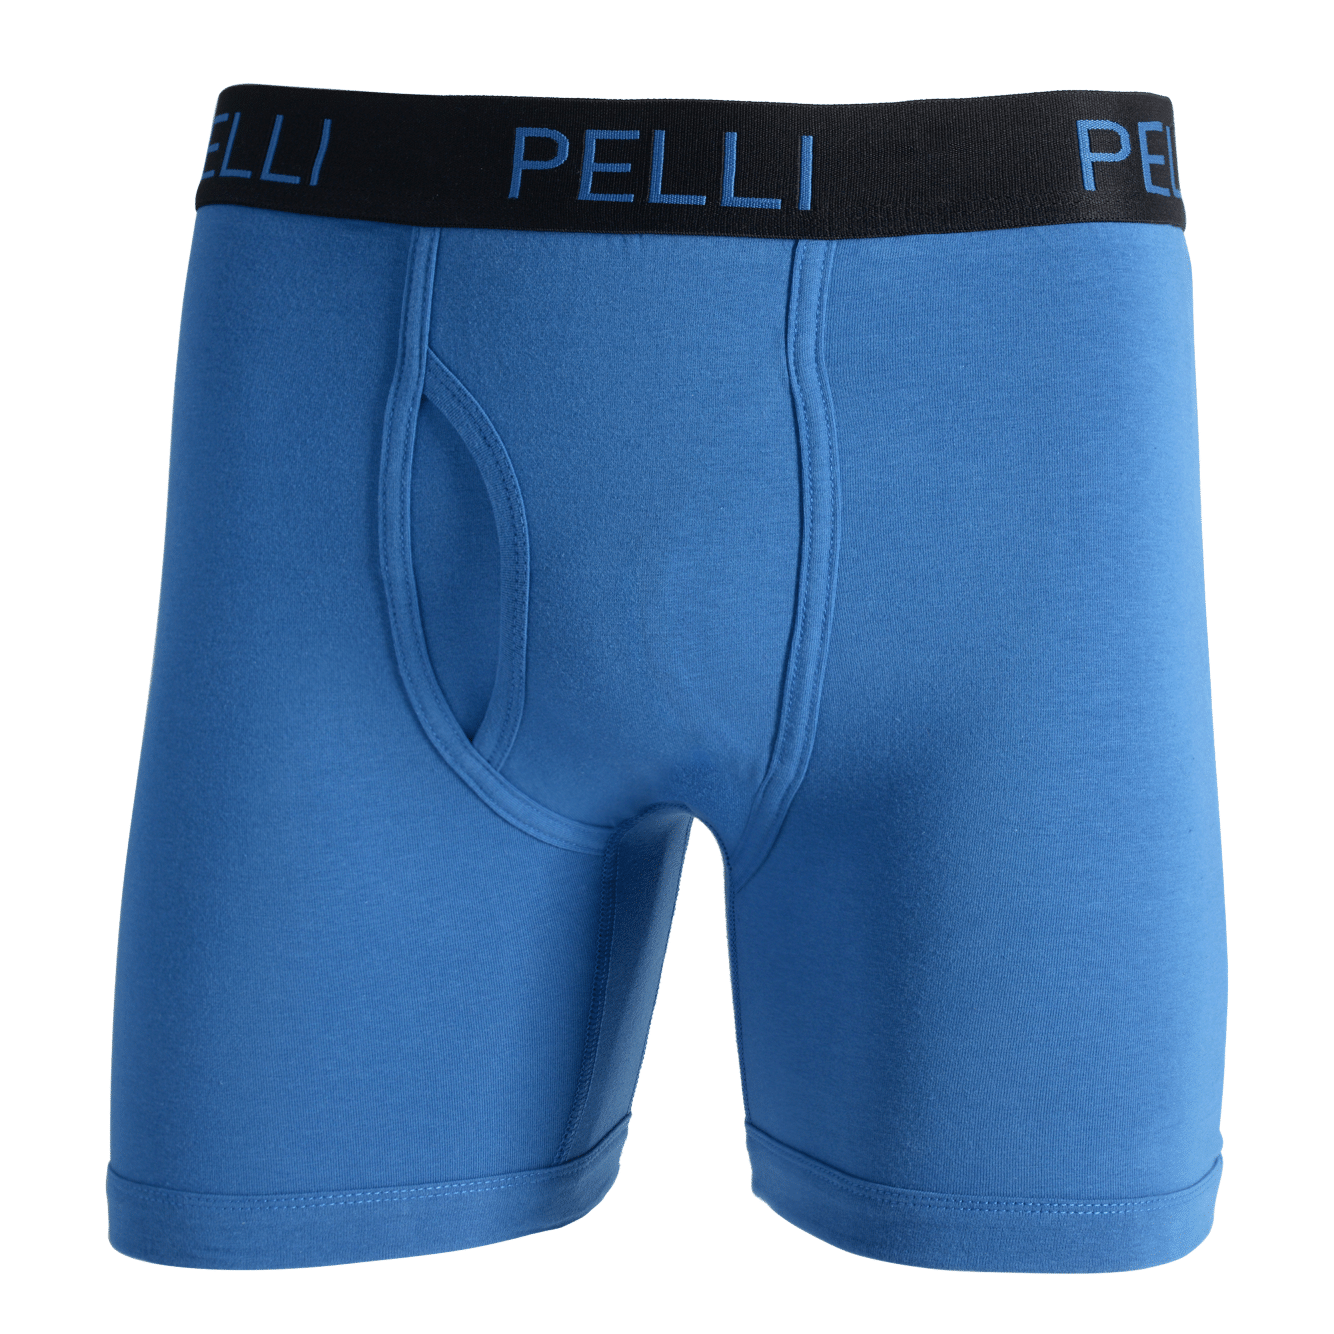 COOPLUS Men's Underwear Briefs Boxer Short Cotton Stretch Soft